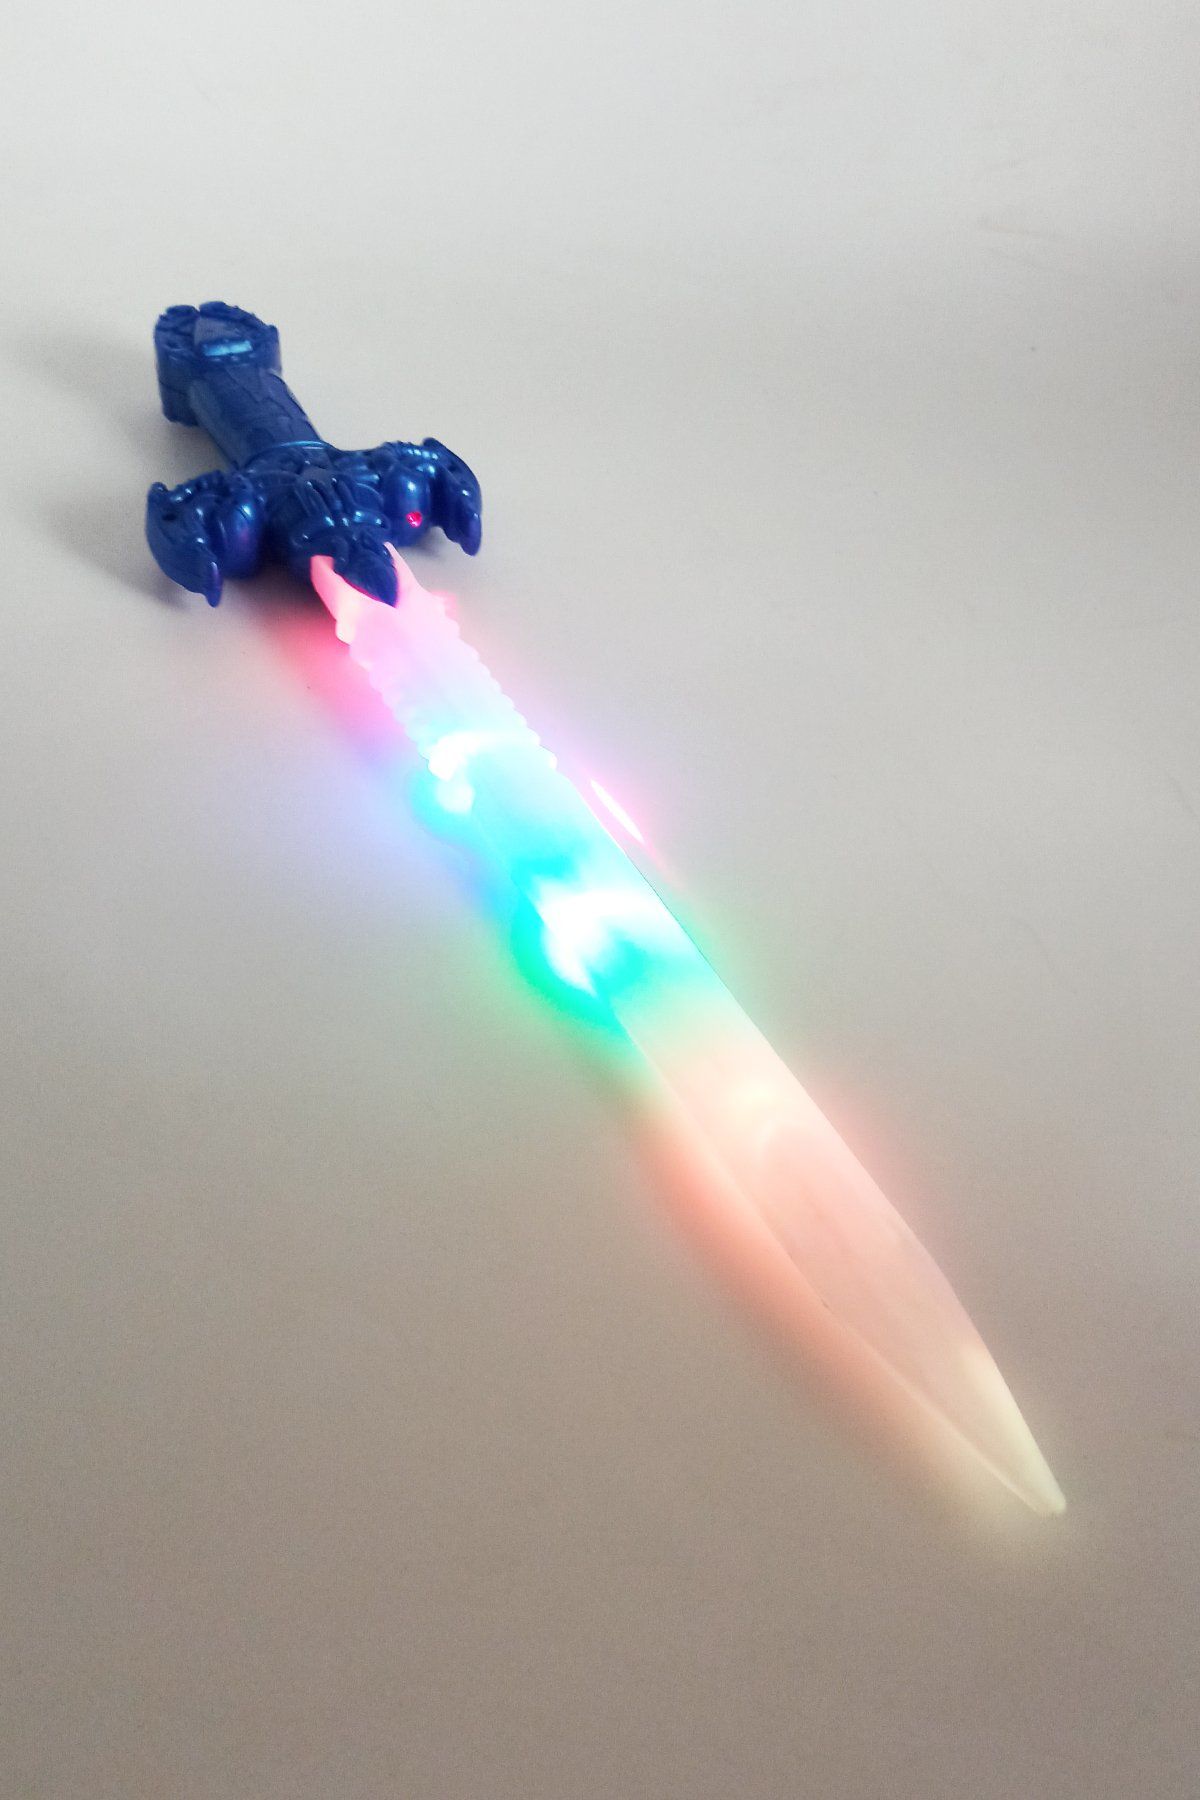 Sesli Işıklı ve Lazerli Gerçekçi Oyuncak Samuray Kılıcı 56 cm Boyunda Mavi